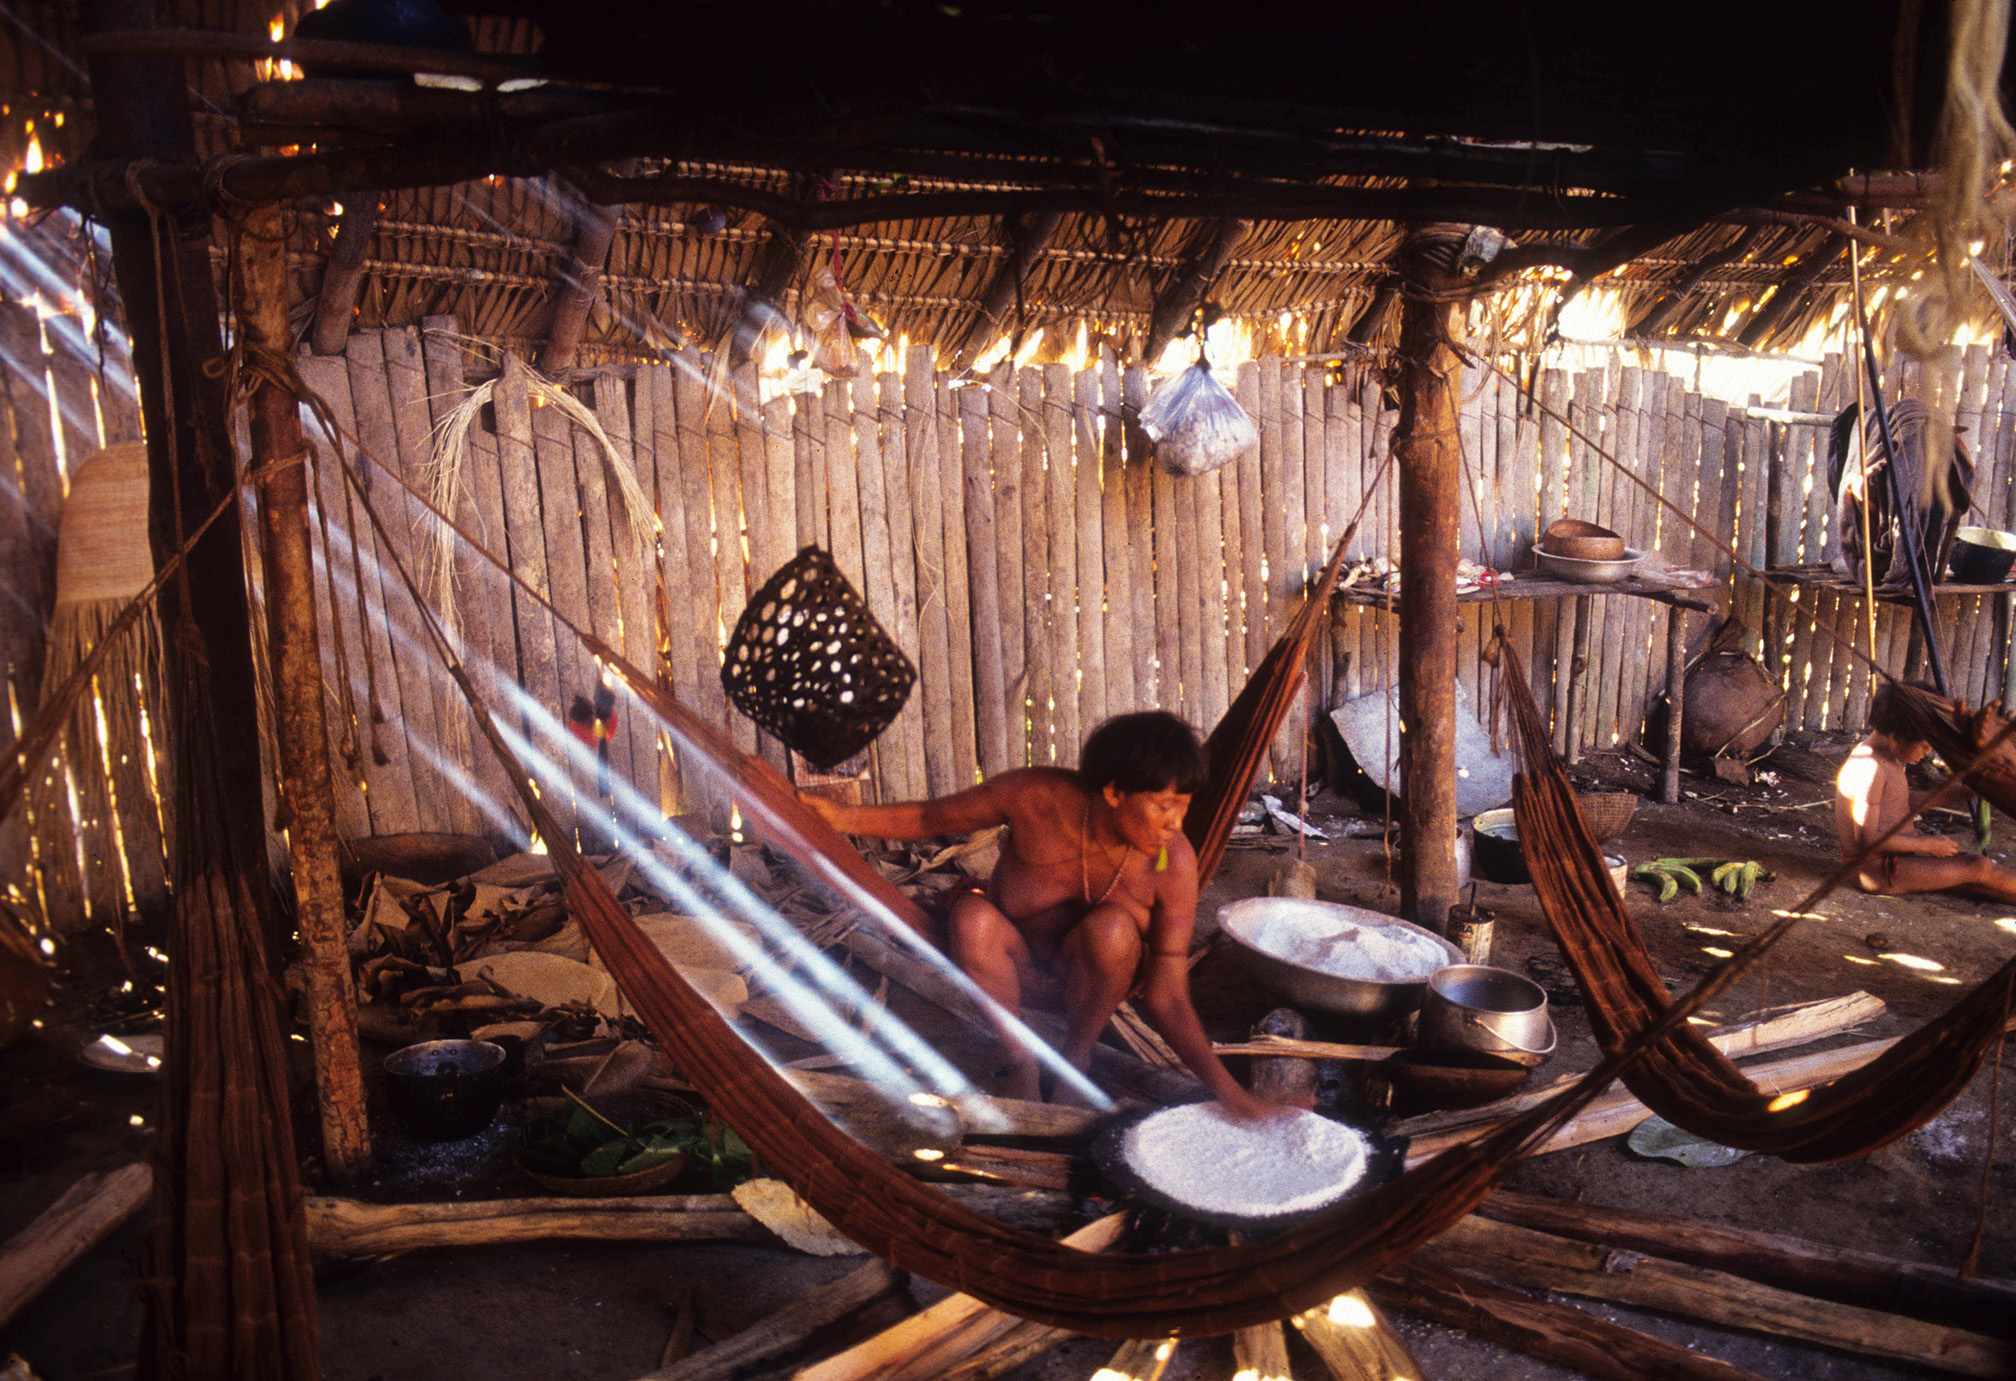 Coronavírus: O que podemos aprender com um xamã da Amazônia? Parte 1: invasão e mortes na Terra Yanomami